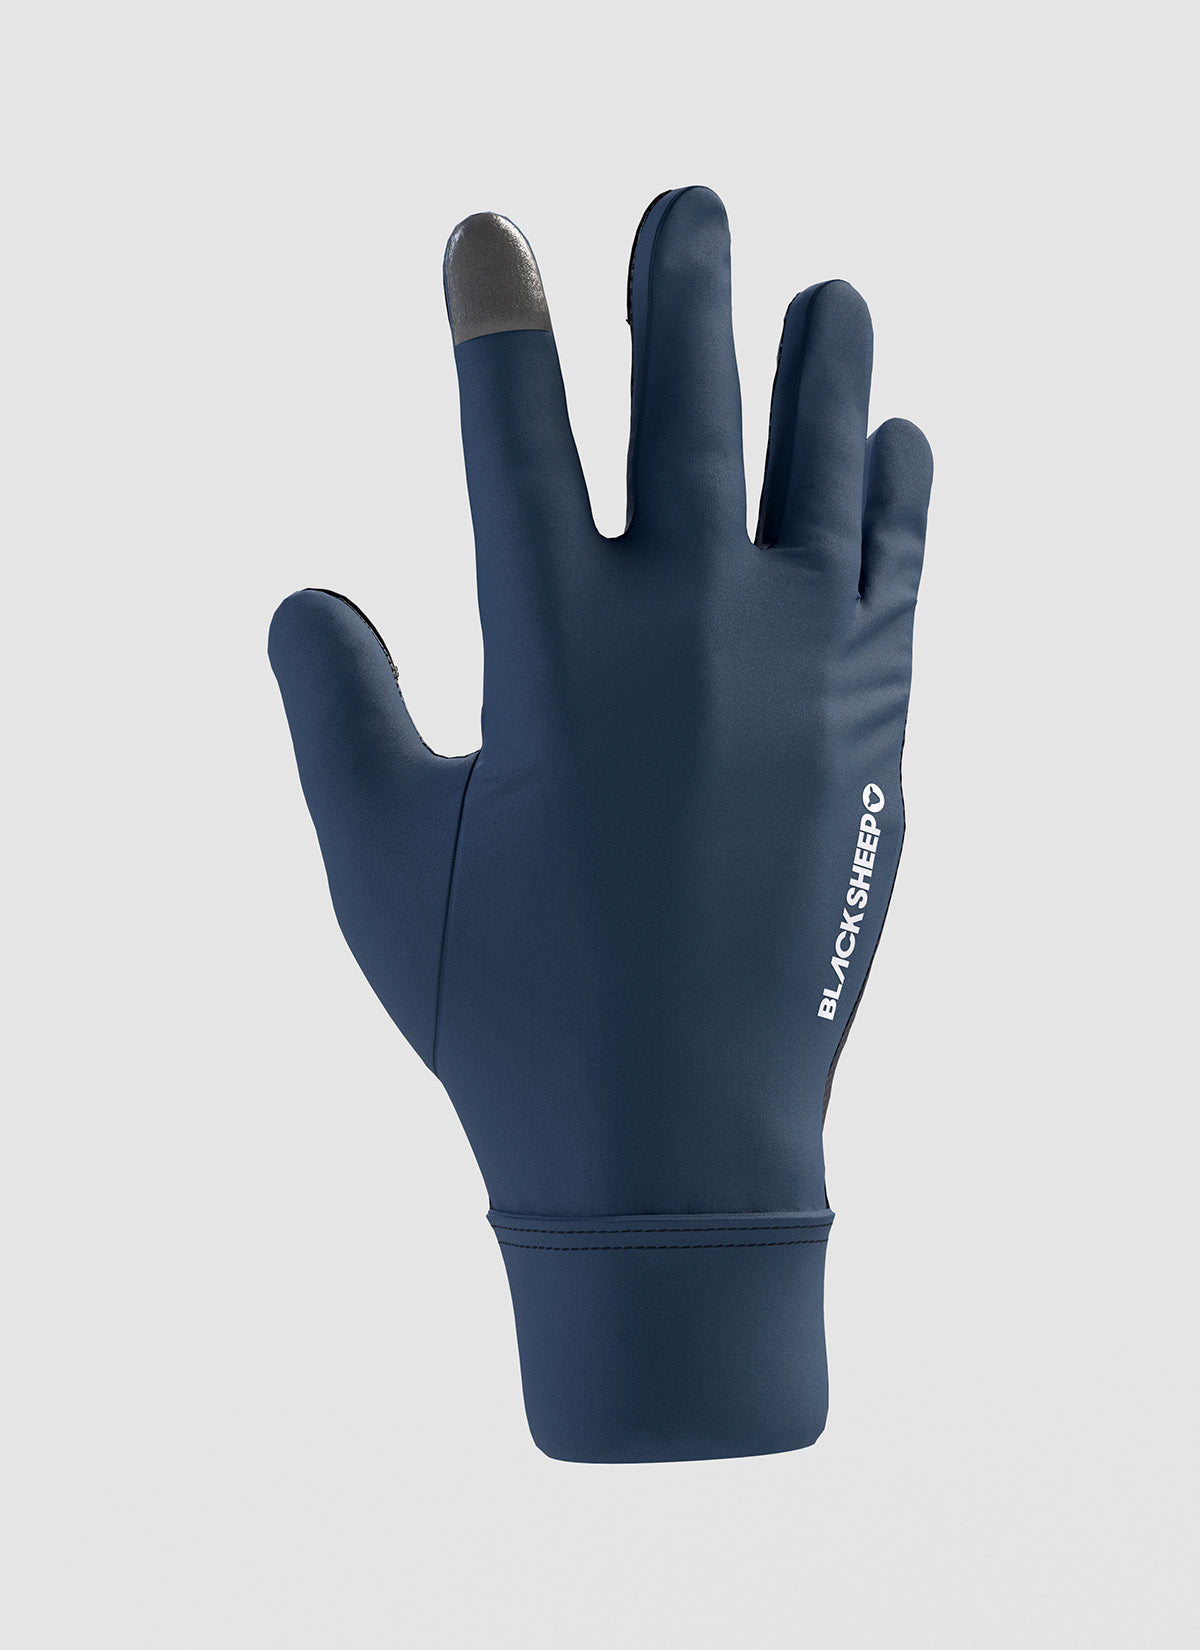 ThermoFleece Gloves - Indigo Blue